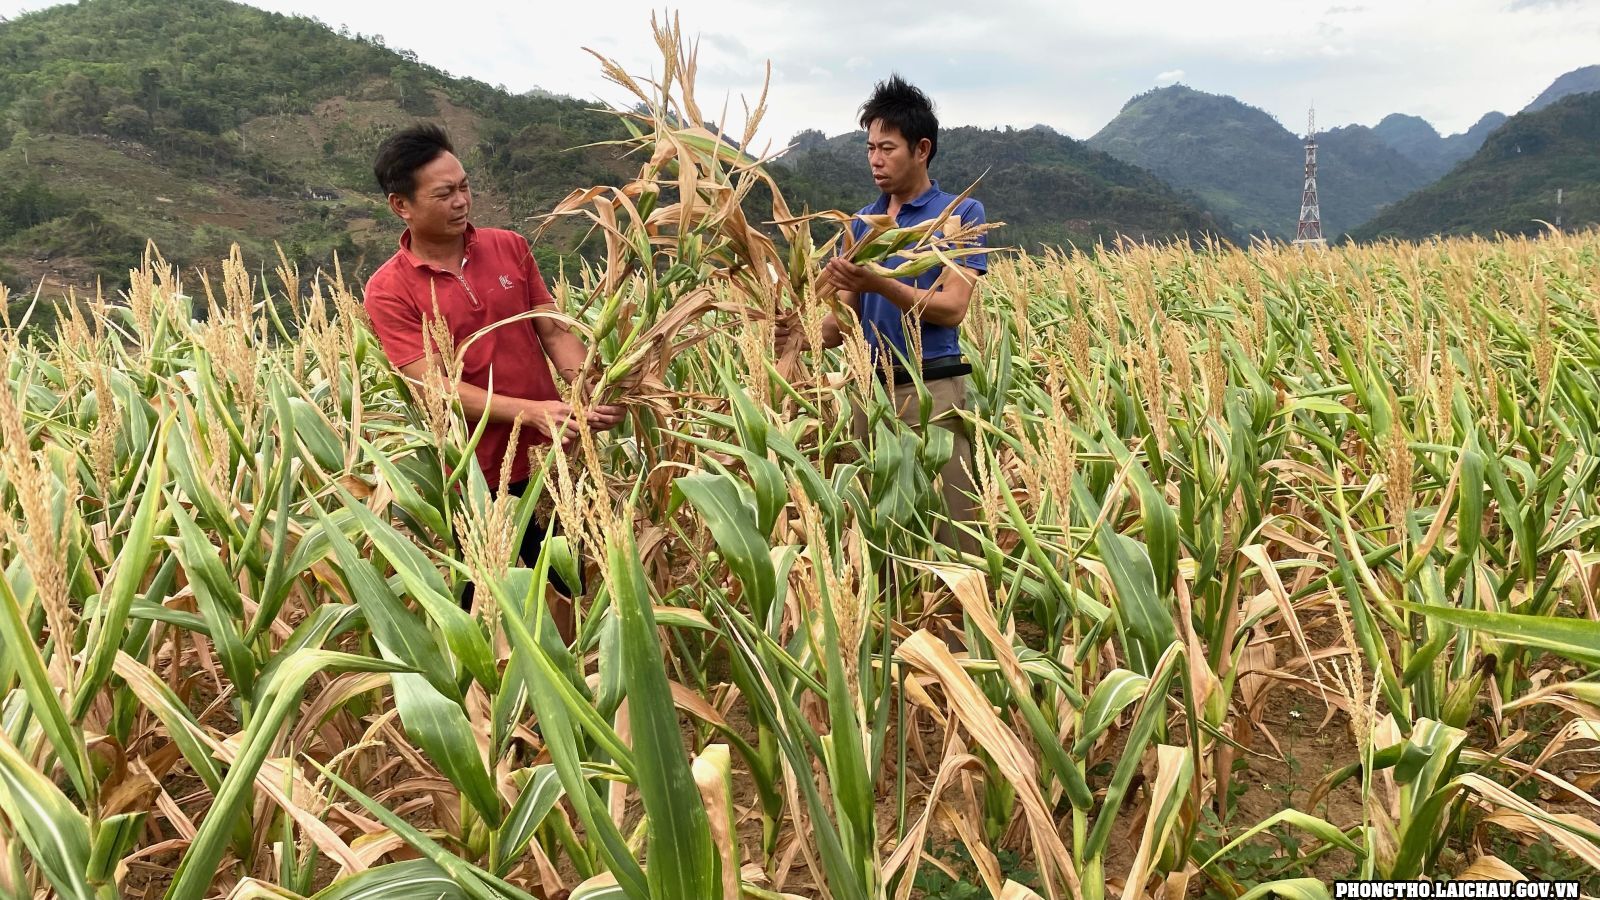 Sản xuất nông nghiệp ở Phong Thổ gặp khó khăn vì nắng nóng, khô hạn